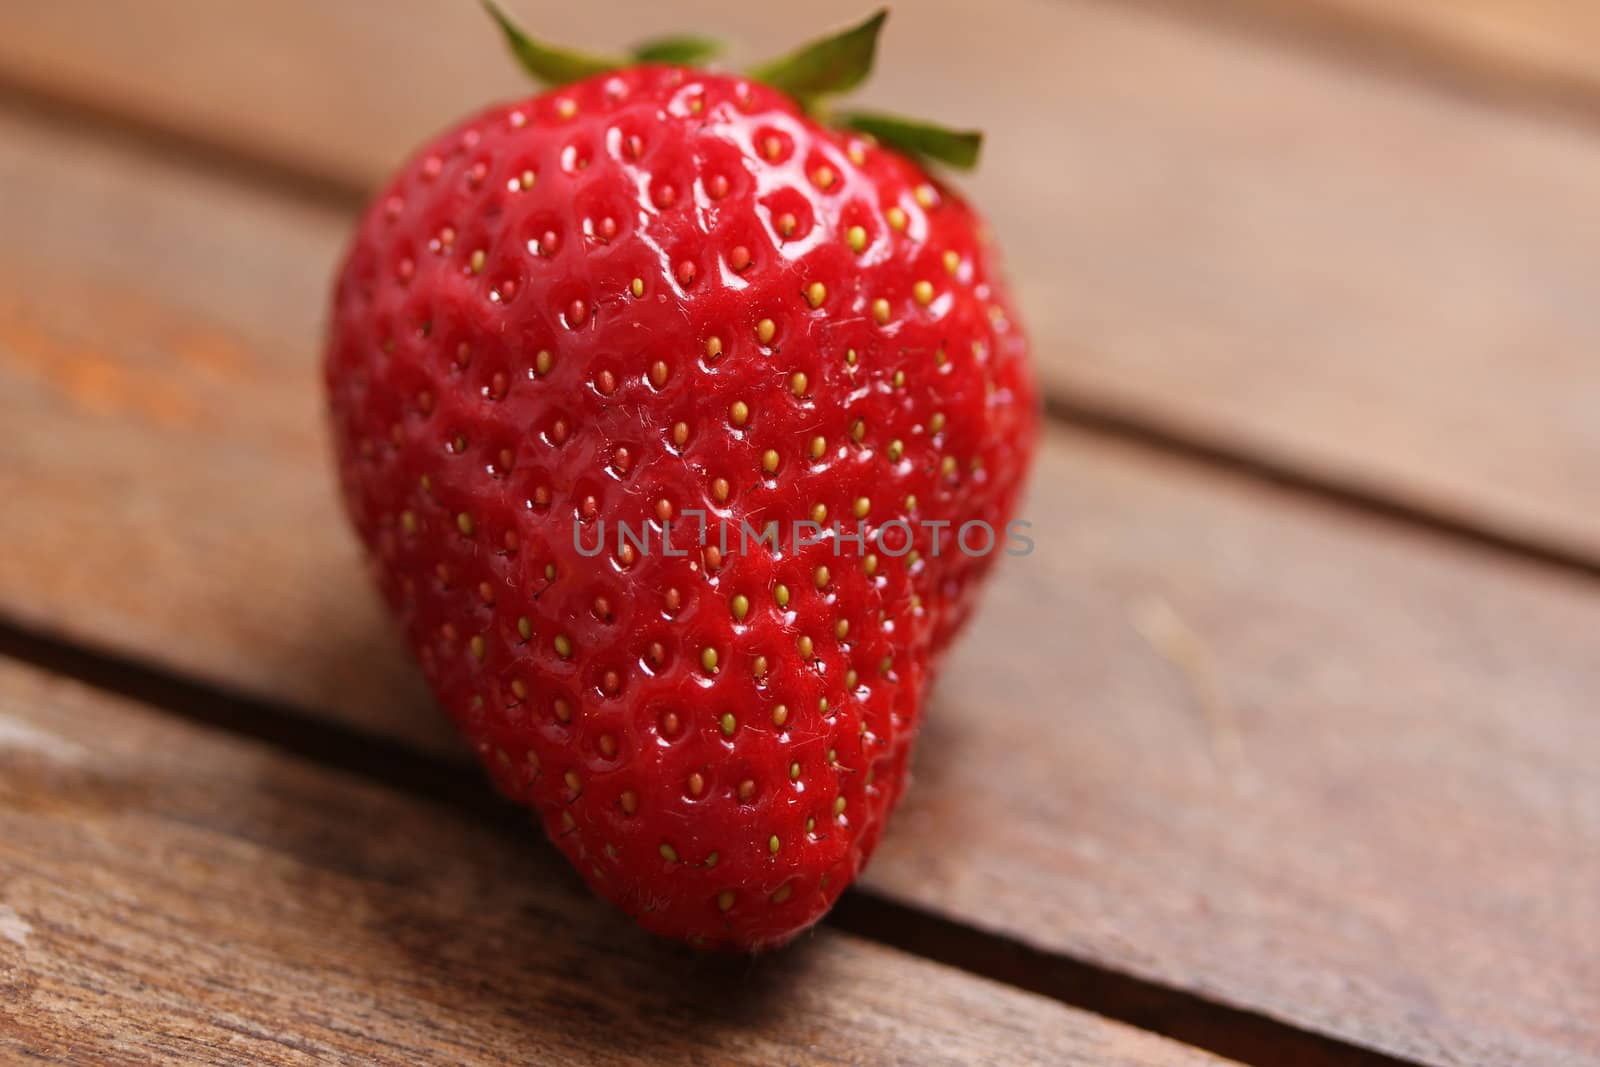 a fresh strawberry